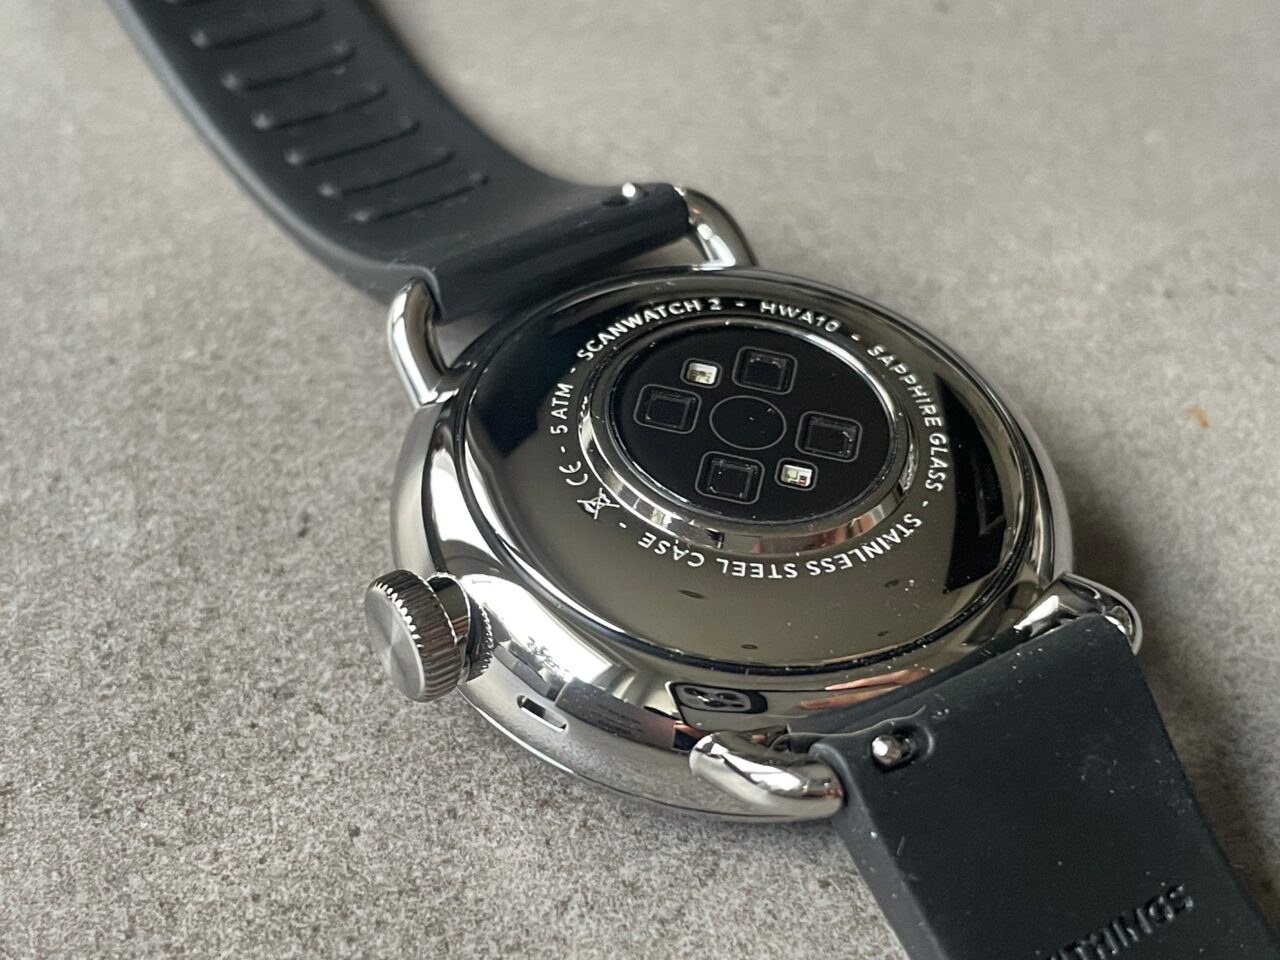 Zegarek inteligentny odwrócony do góry dnem na tle o szarej fakturze, pokazujący spód urządzenia z sensorami i informacjami o modelu.